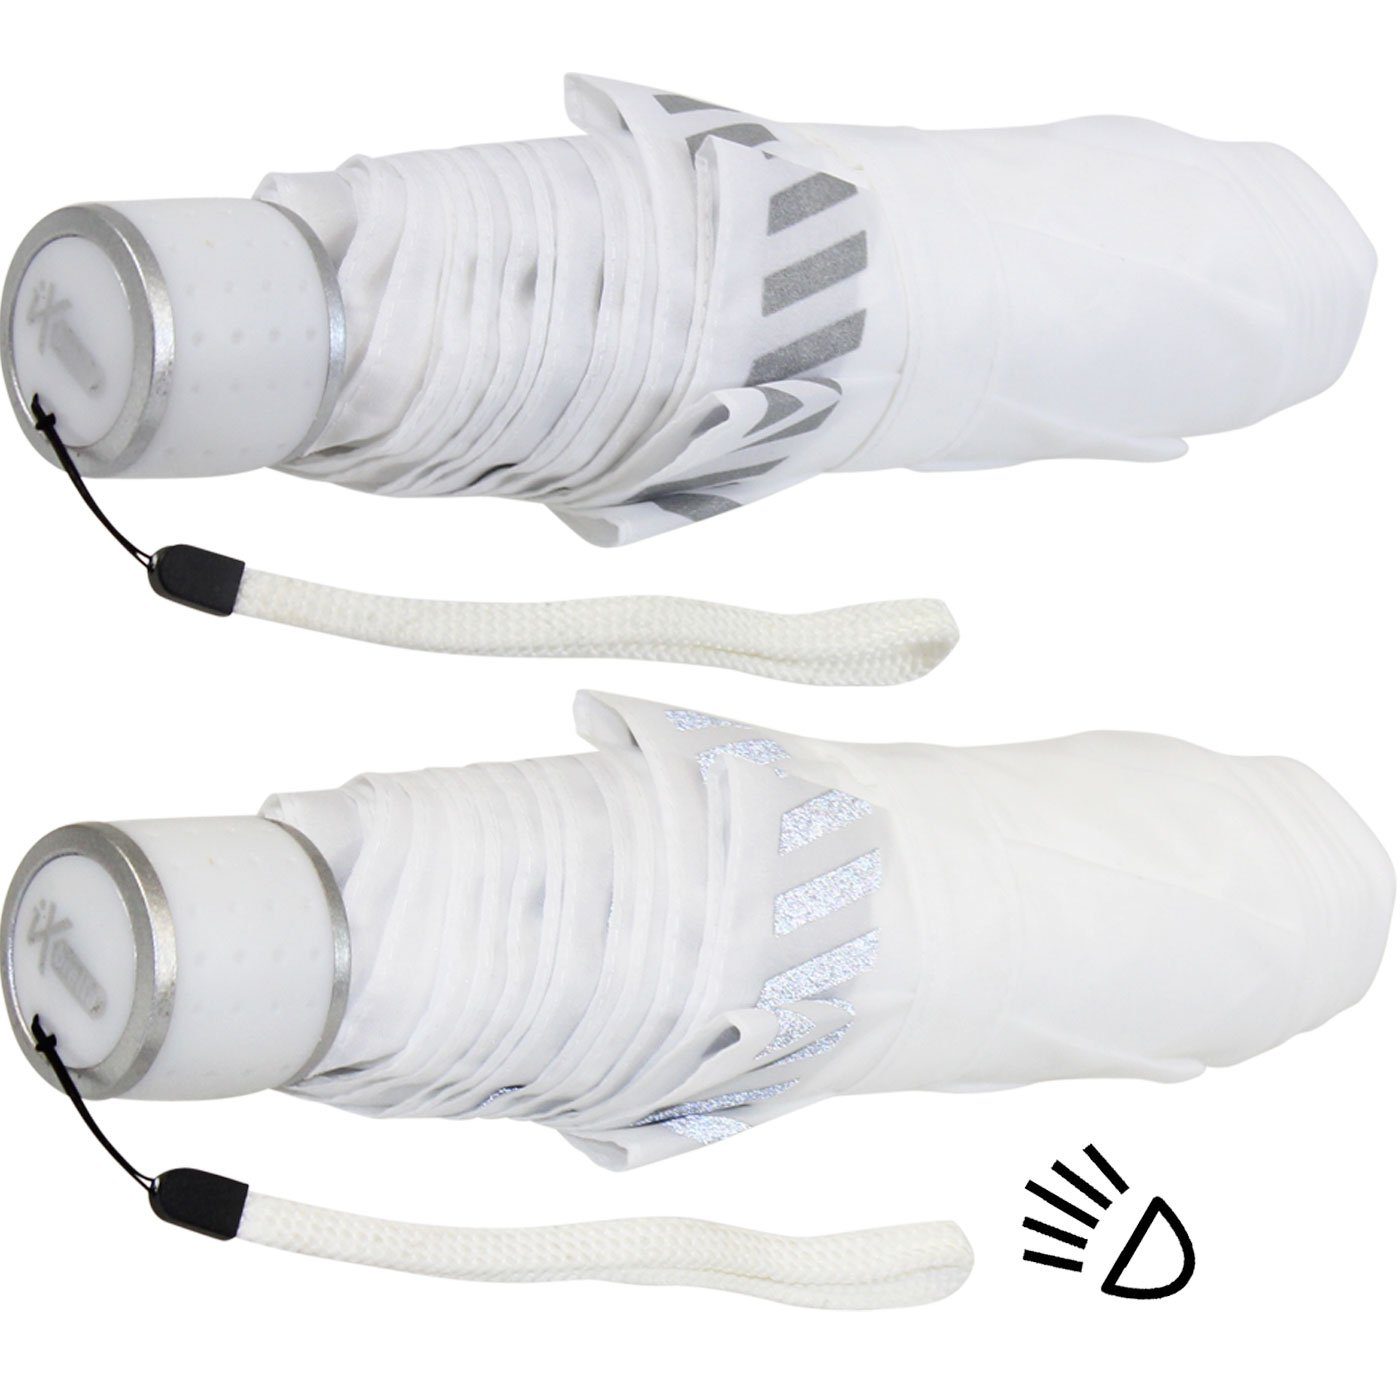 iX-brella Taschenregenschirm Mini weiß reflektierend Kinderschirm extra Safety Reflex leicht